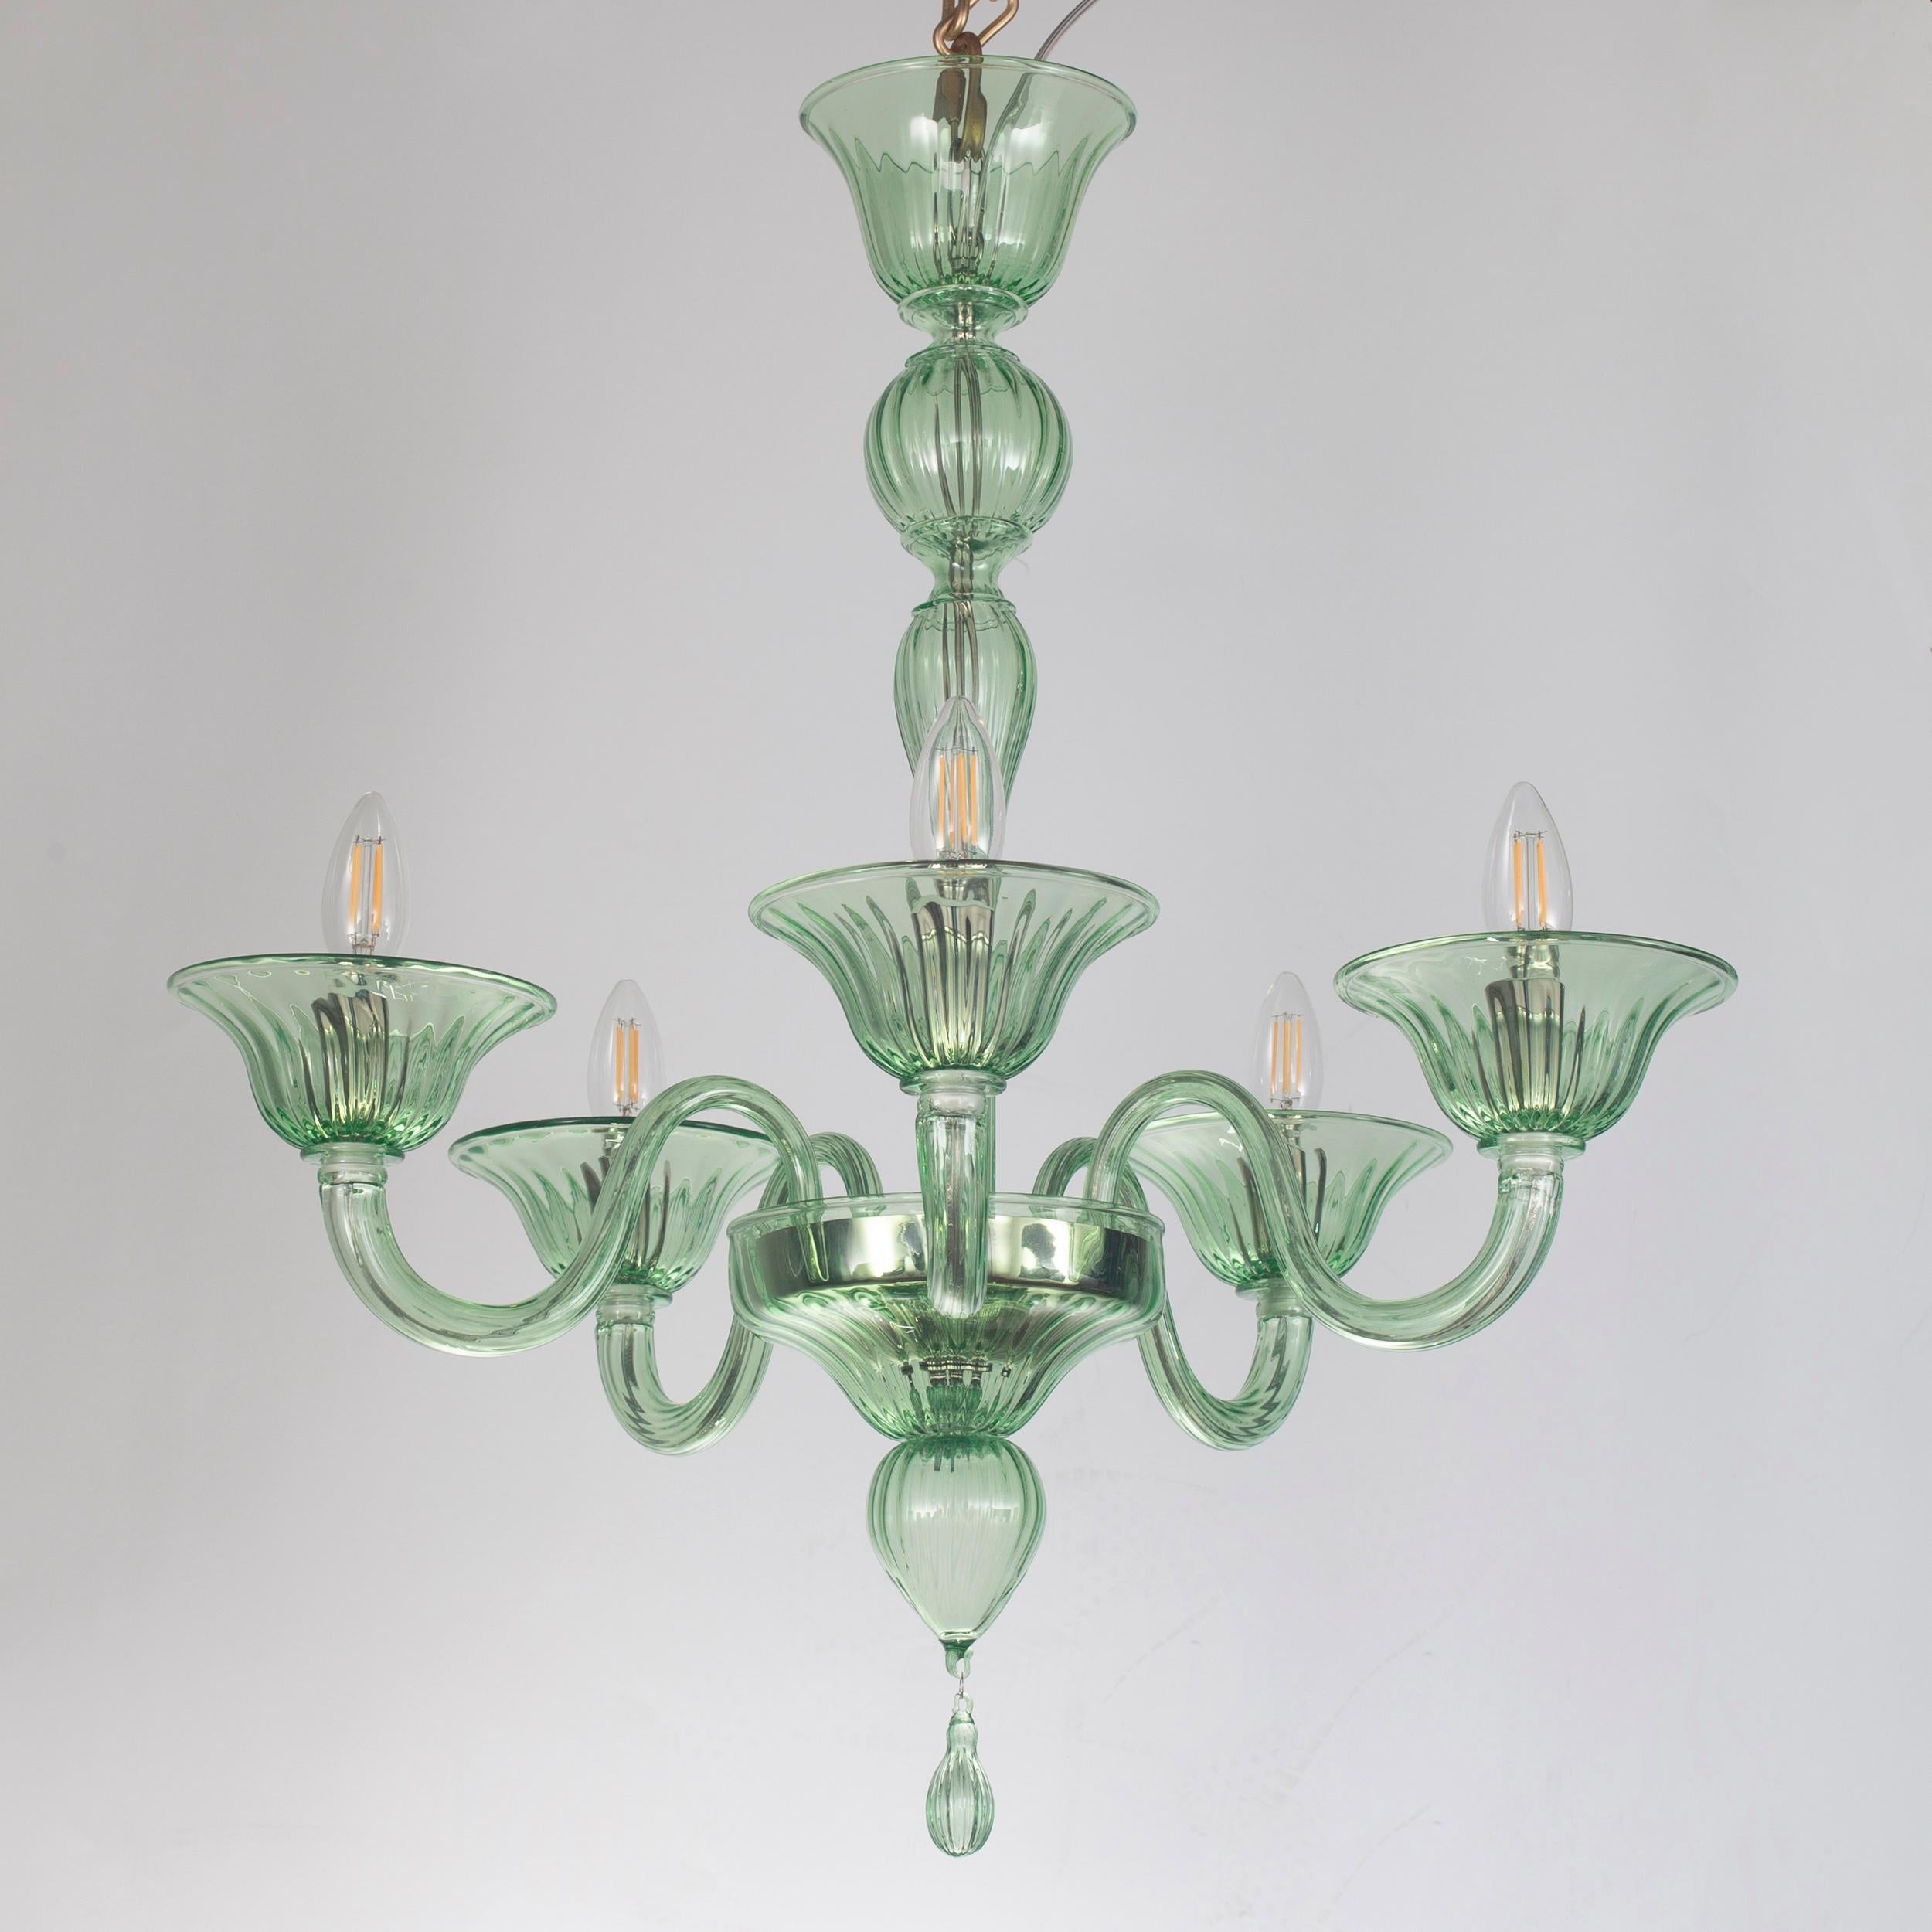 Klassischer Kronleuchter, 5 Arme grünes Murano Glas Simplicissimus von Multiforme
Diese Collection'S aus Murano-Glas zeichnet sich durch ihre außergewöhnliche Schlichtheit aus. Es ist das Ergebnis einer Forschung, die auf die klassischen